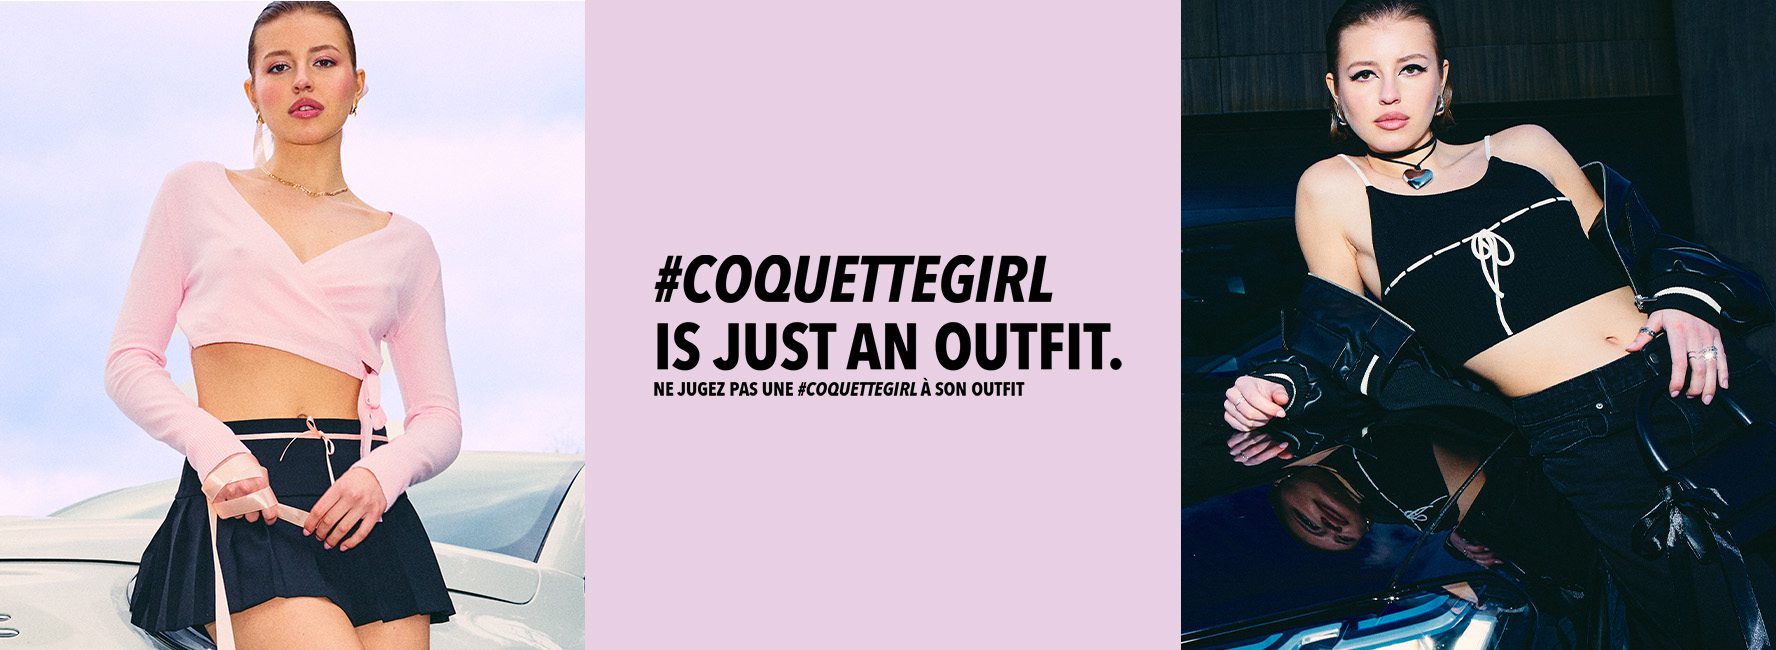 Coquette Girl